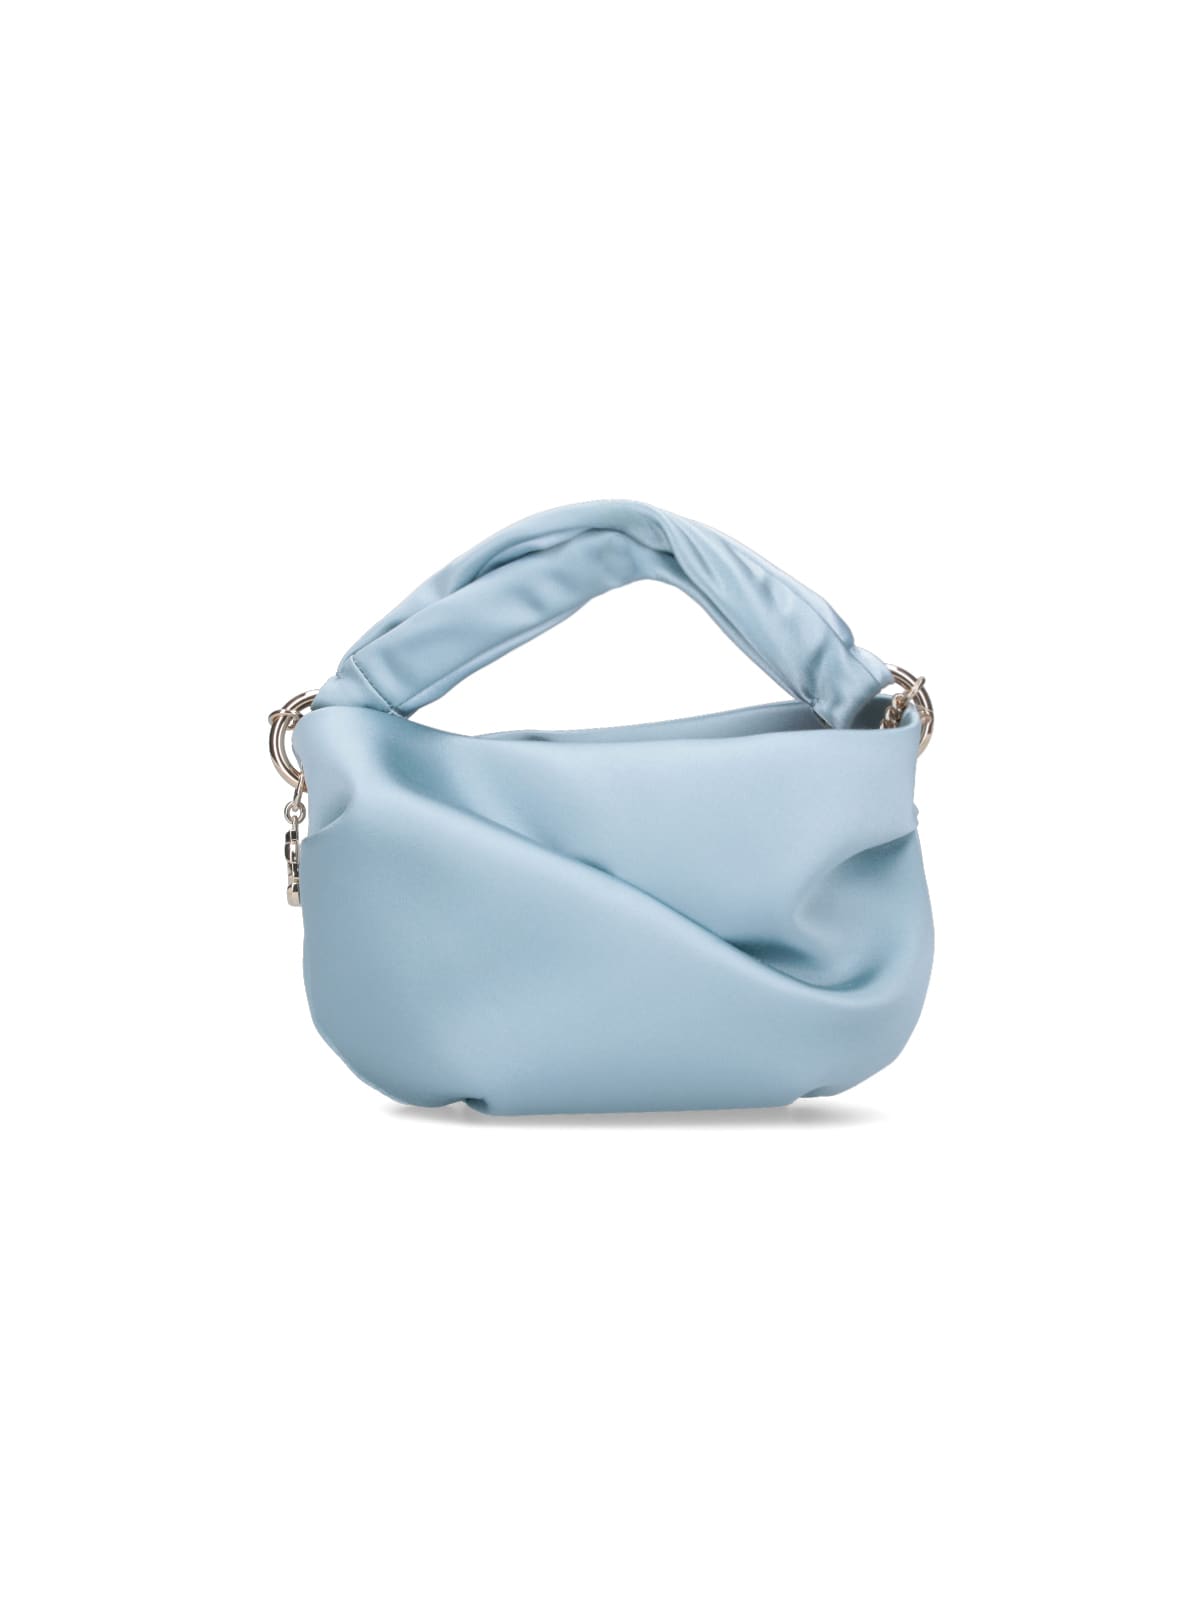 Jimmy Choo Bonny Handbag In Light Blue